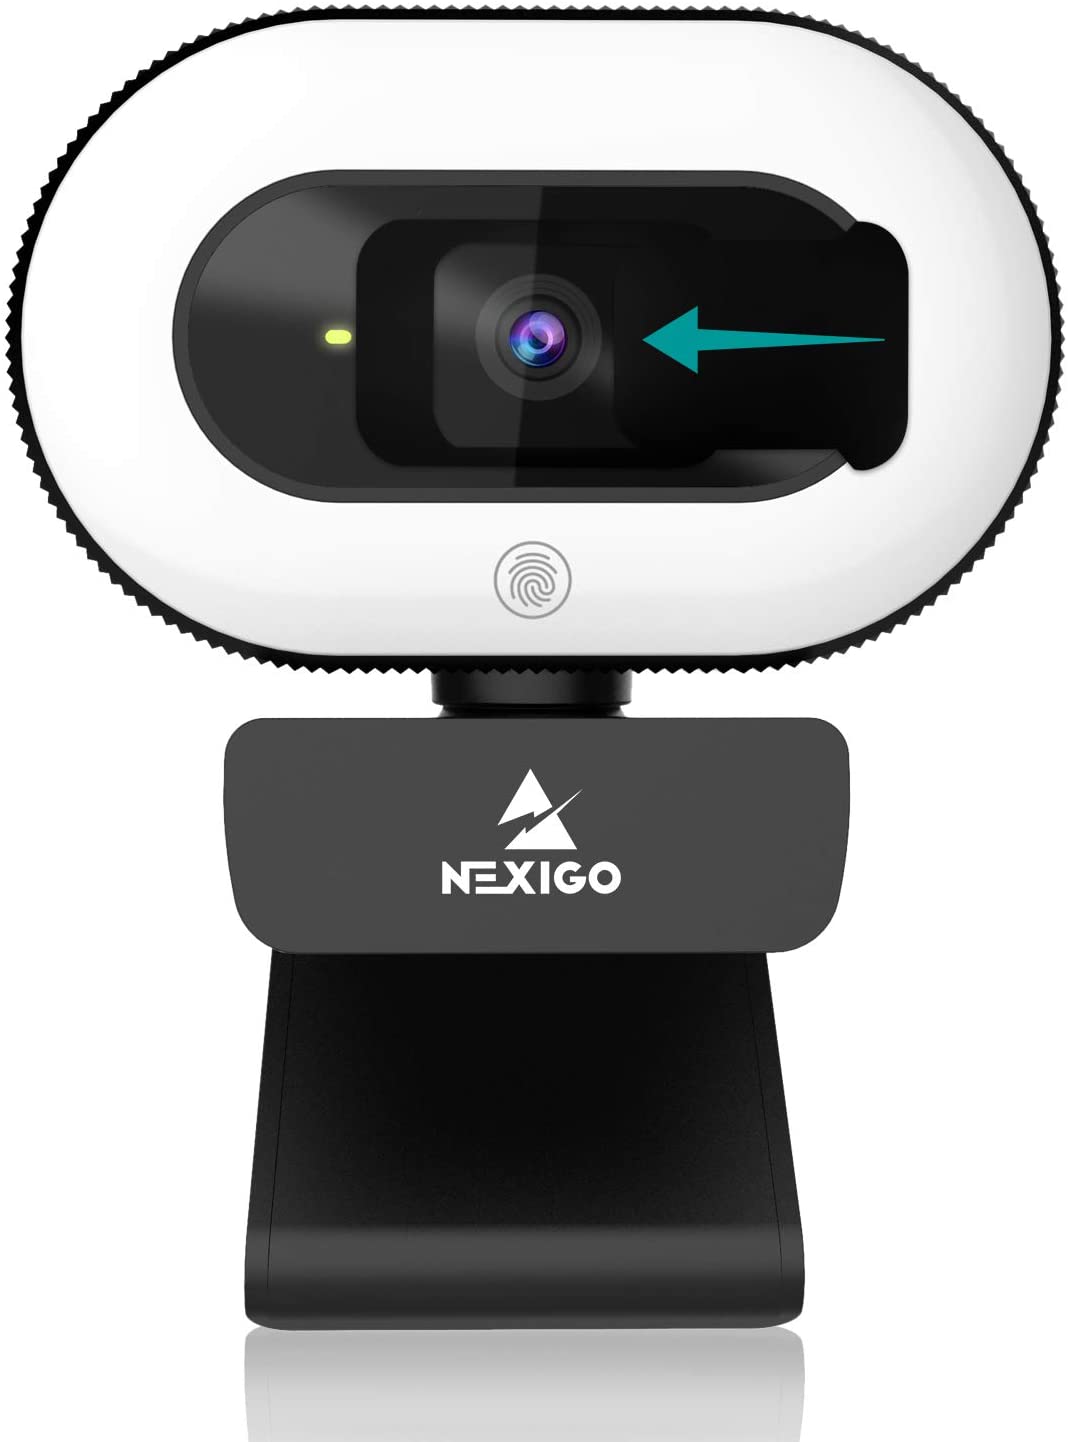 2021 NexiGo StreamCam N930E,เว็บแคม1080P พร้อมไฟวงแหวนและความเป็นส่วนตัว,โฟกัสอัตโนมัติ,Plug And Play,กล้องเว็บสำหรับการเรียนรู้ออนไลน์,ซูมประชุม Skype ทีม,พีซี Mac แล็ปท็อปคอมพิวเตอร์ตั้งโต๊ะ